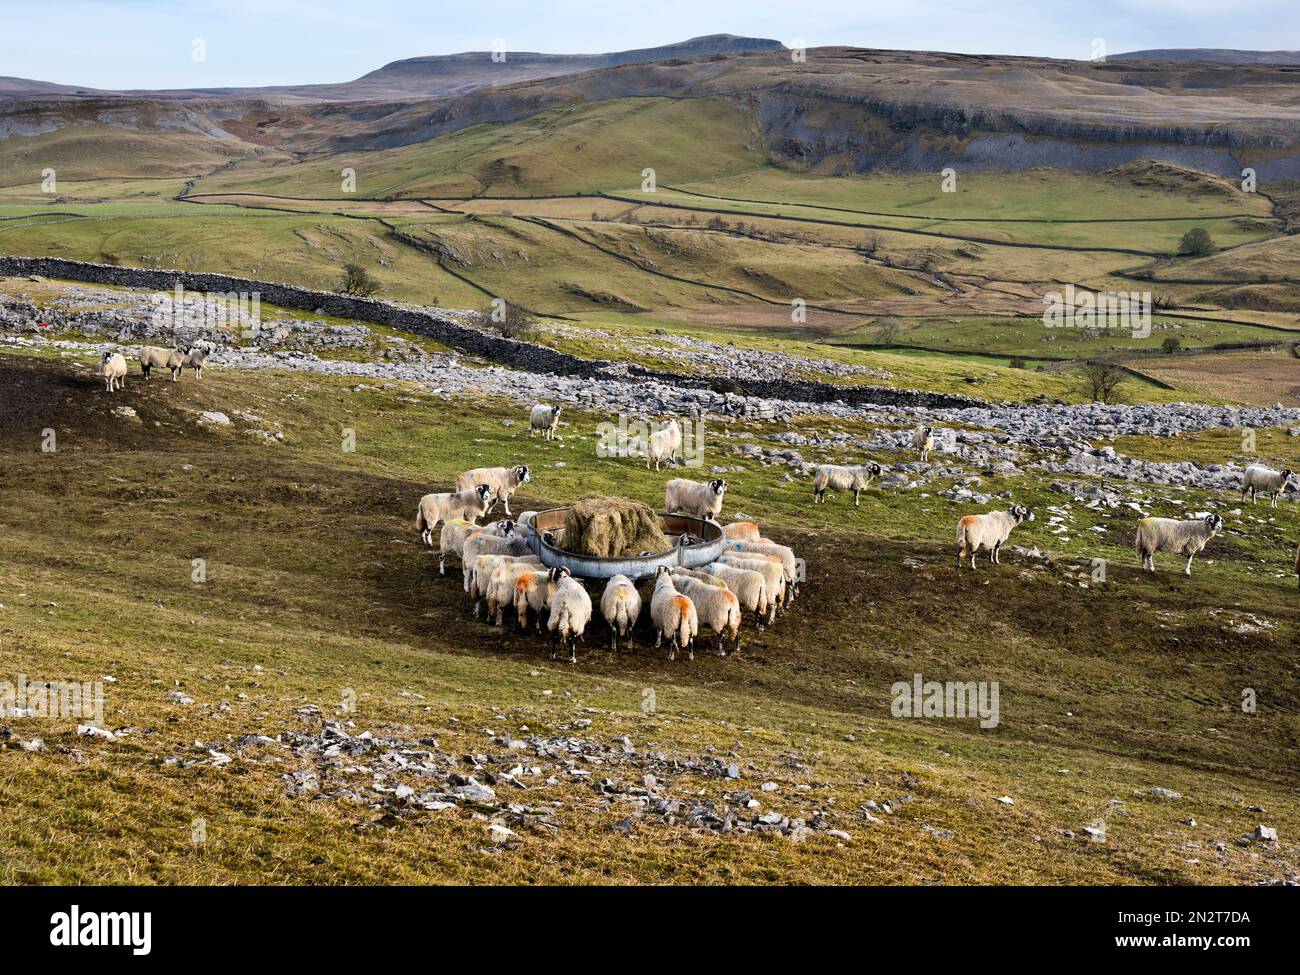 Moutons de colline se nourrissant de foin dans les champs pendant l'hiver, Crummackdale, Austwick, parc national de Yorkshire Dales, Royaume-Uni. Pen-y-gand est vu à l'horizon. Banque D'Images